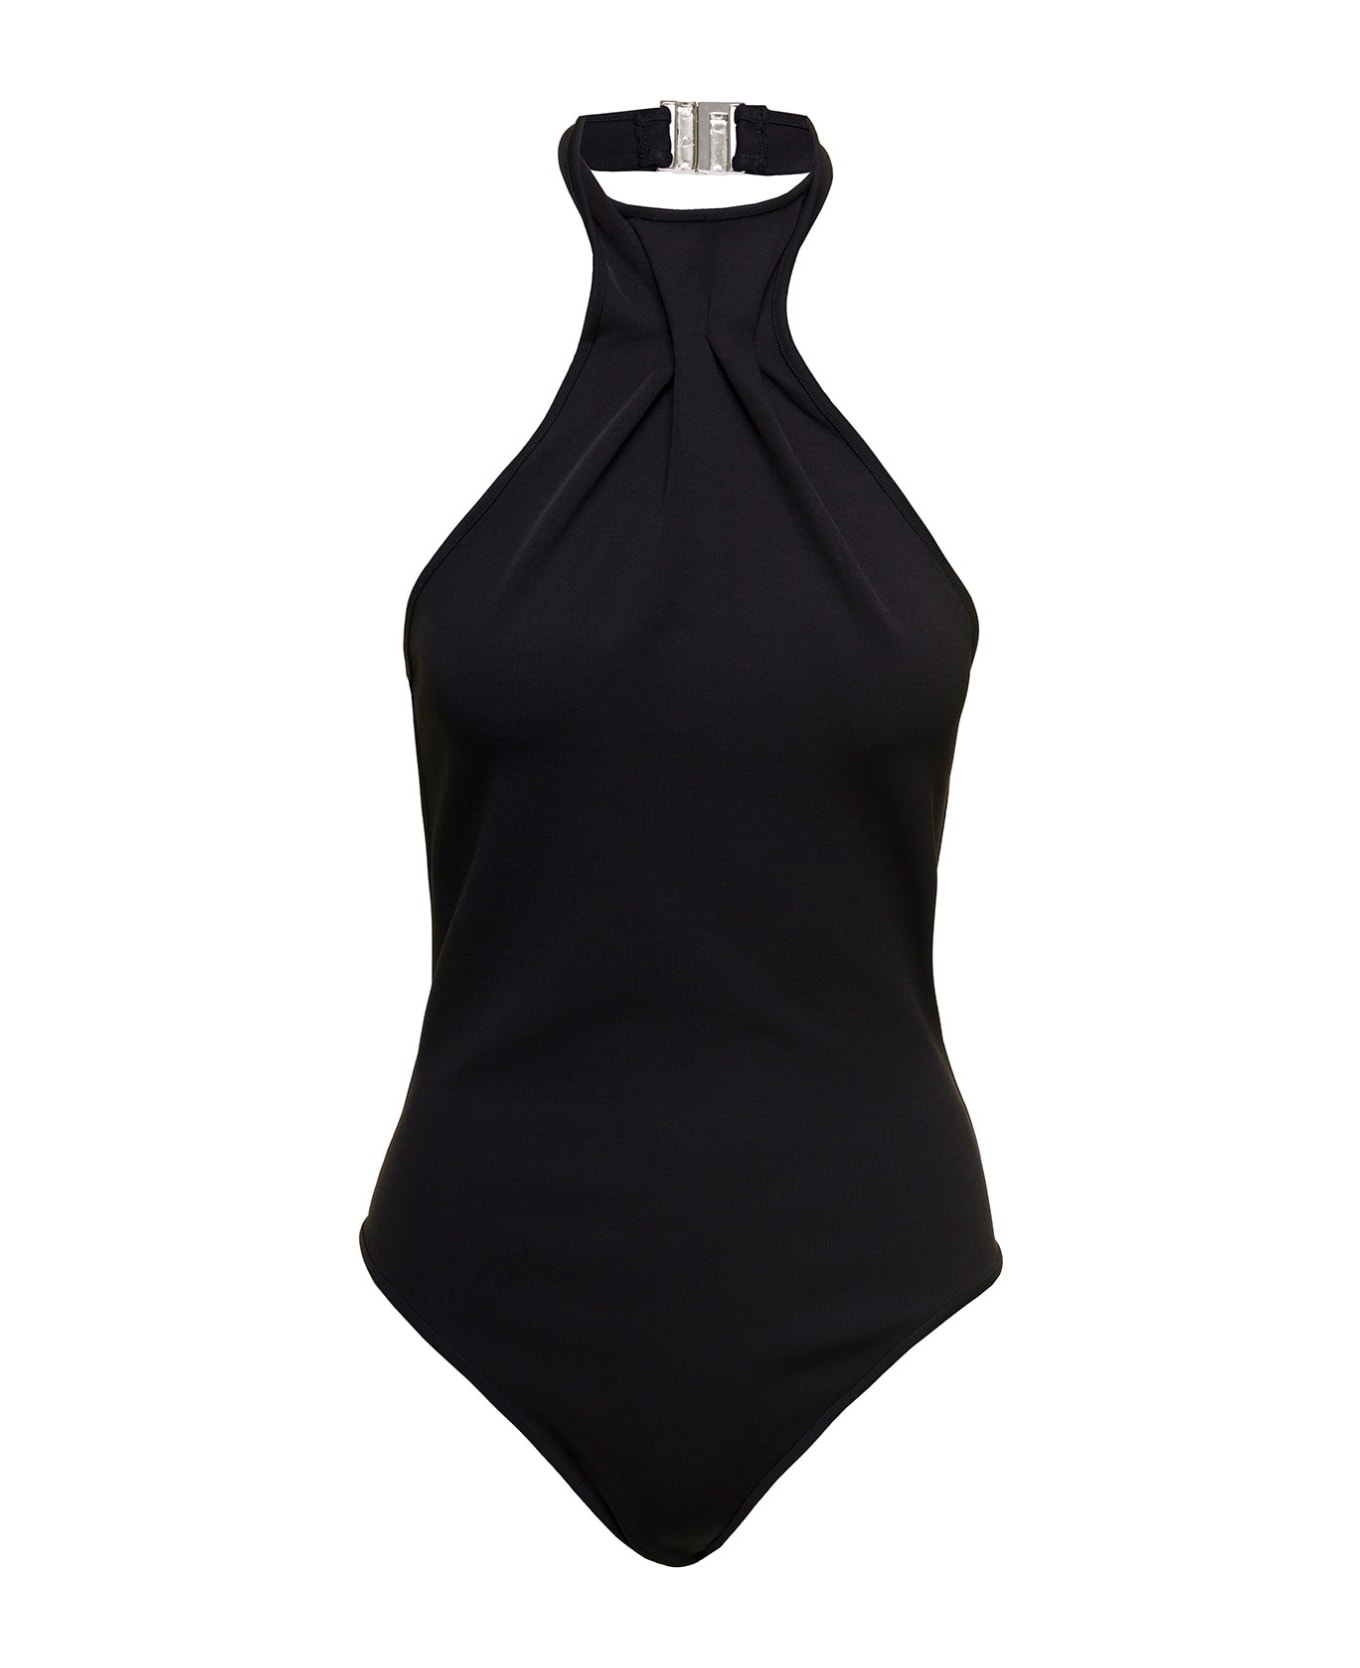 GAUGE81 'nashvi' Black Halterneck Bodysuit In Viscose Blend Woman Gauge81 - Black